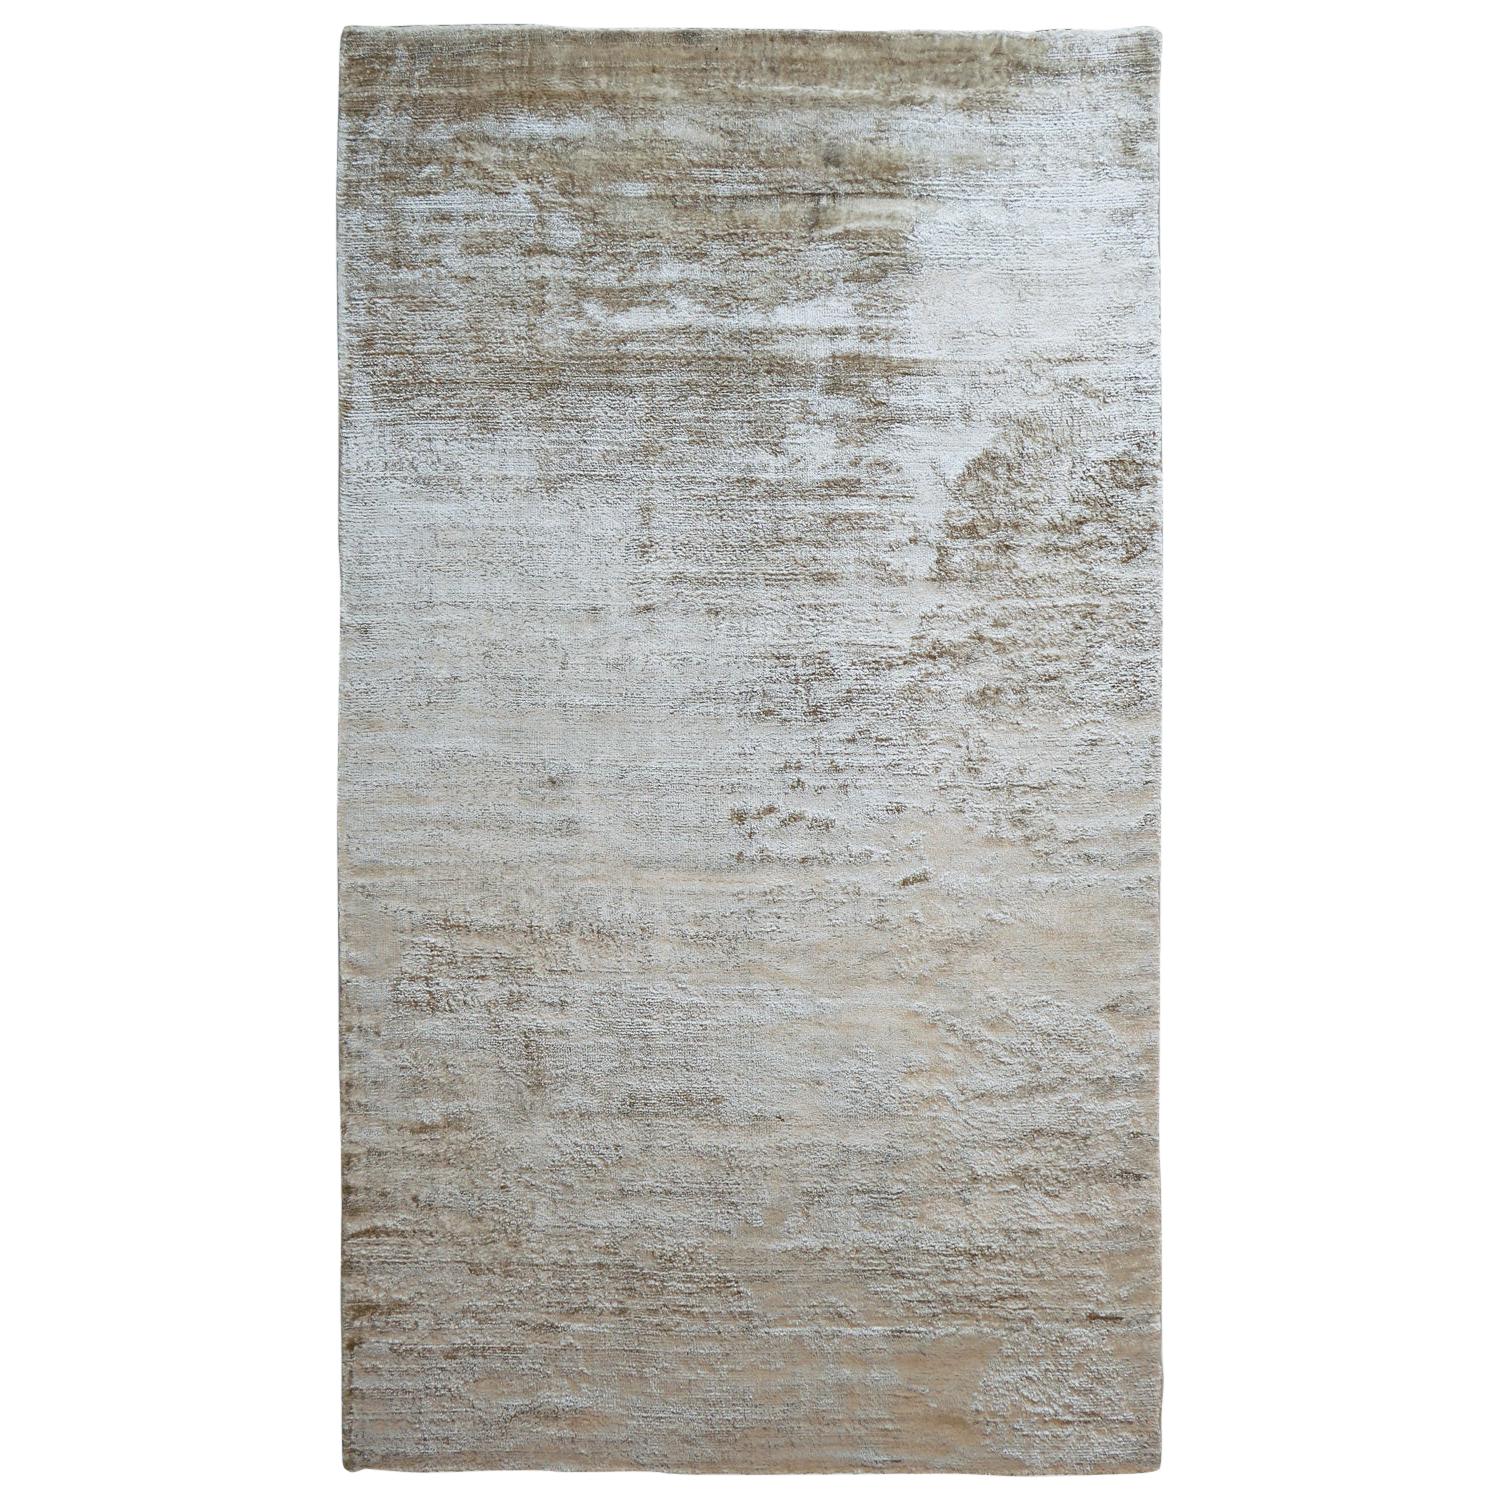 Zeitgenössischer warmer, neutraler, glänzender, weicher Teppich von Deanna Comellini 200x350 cm